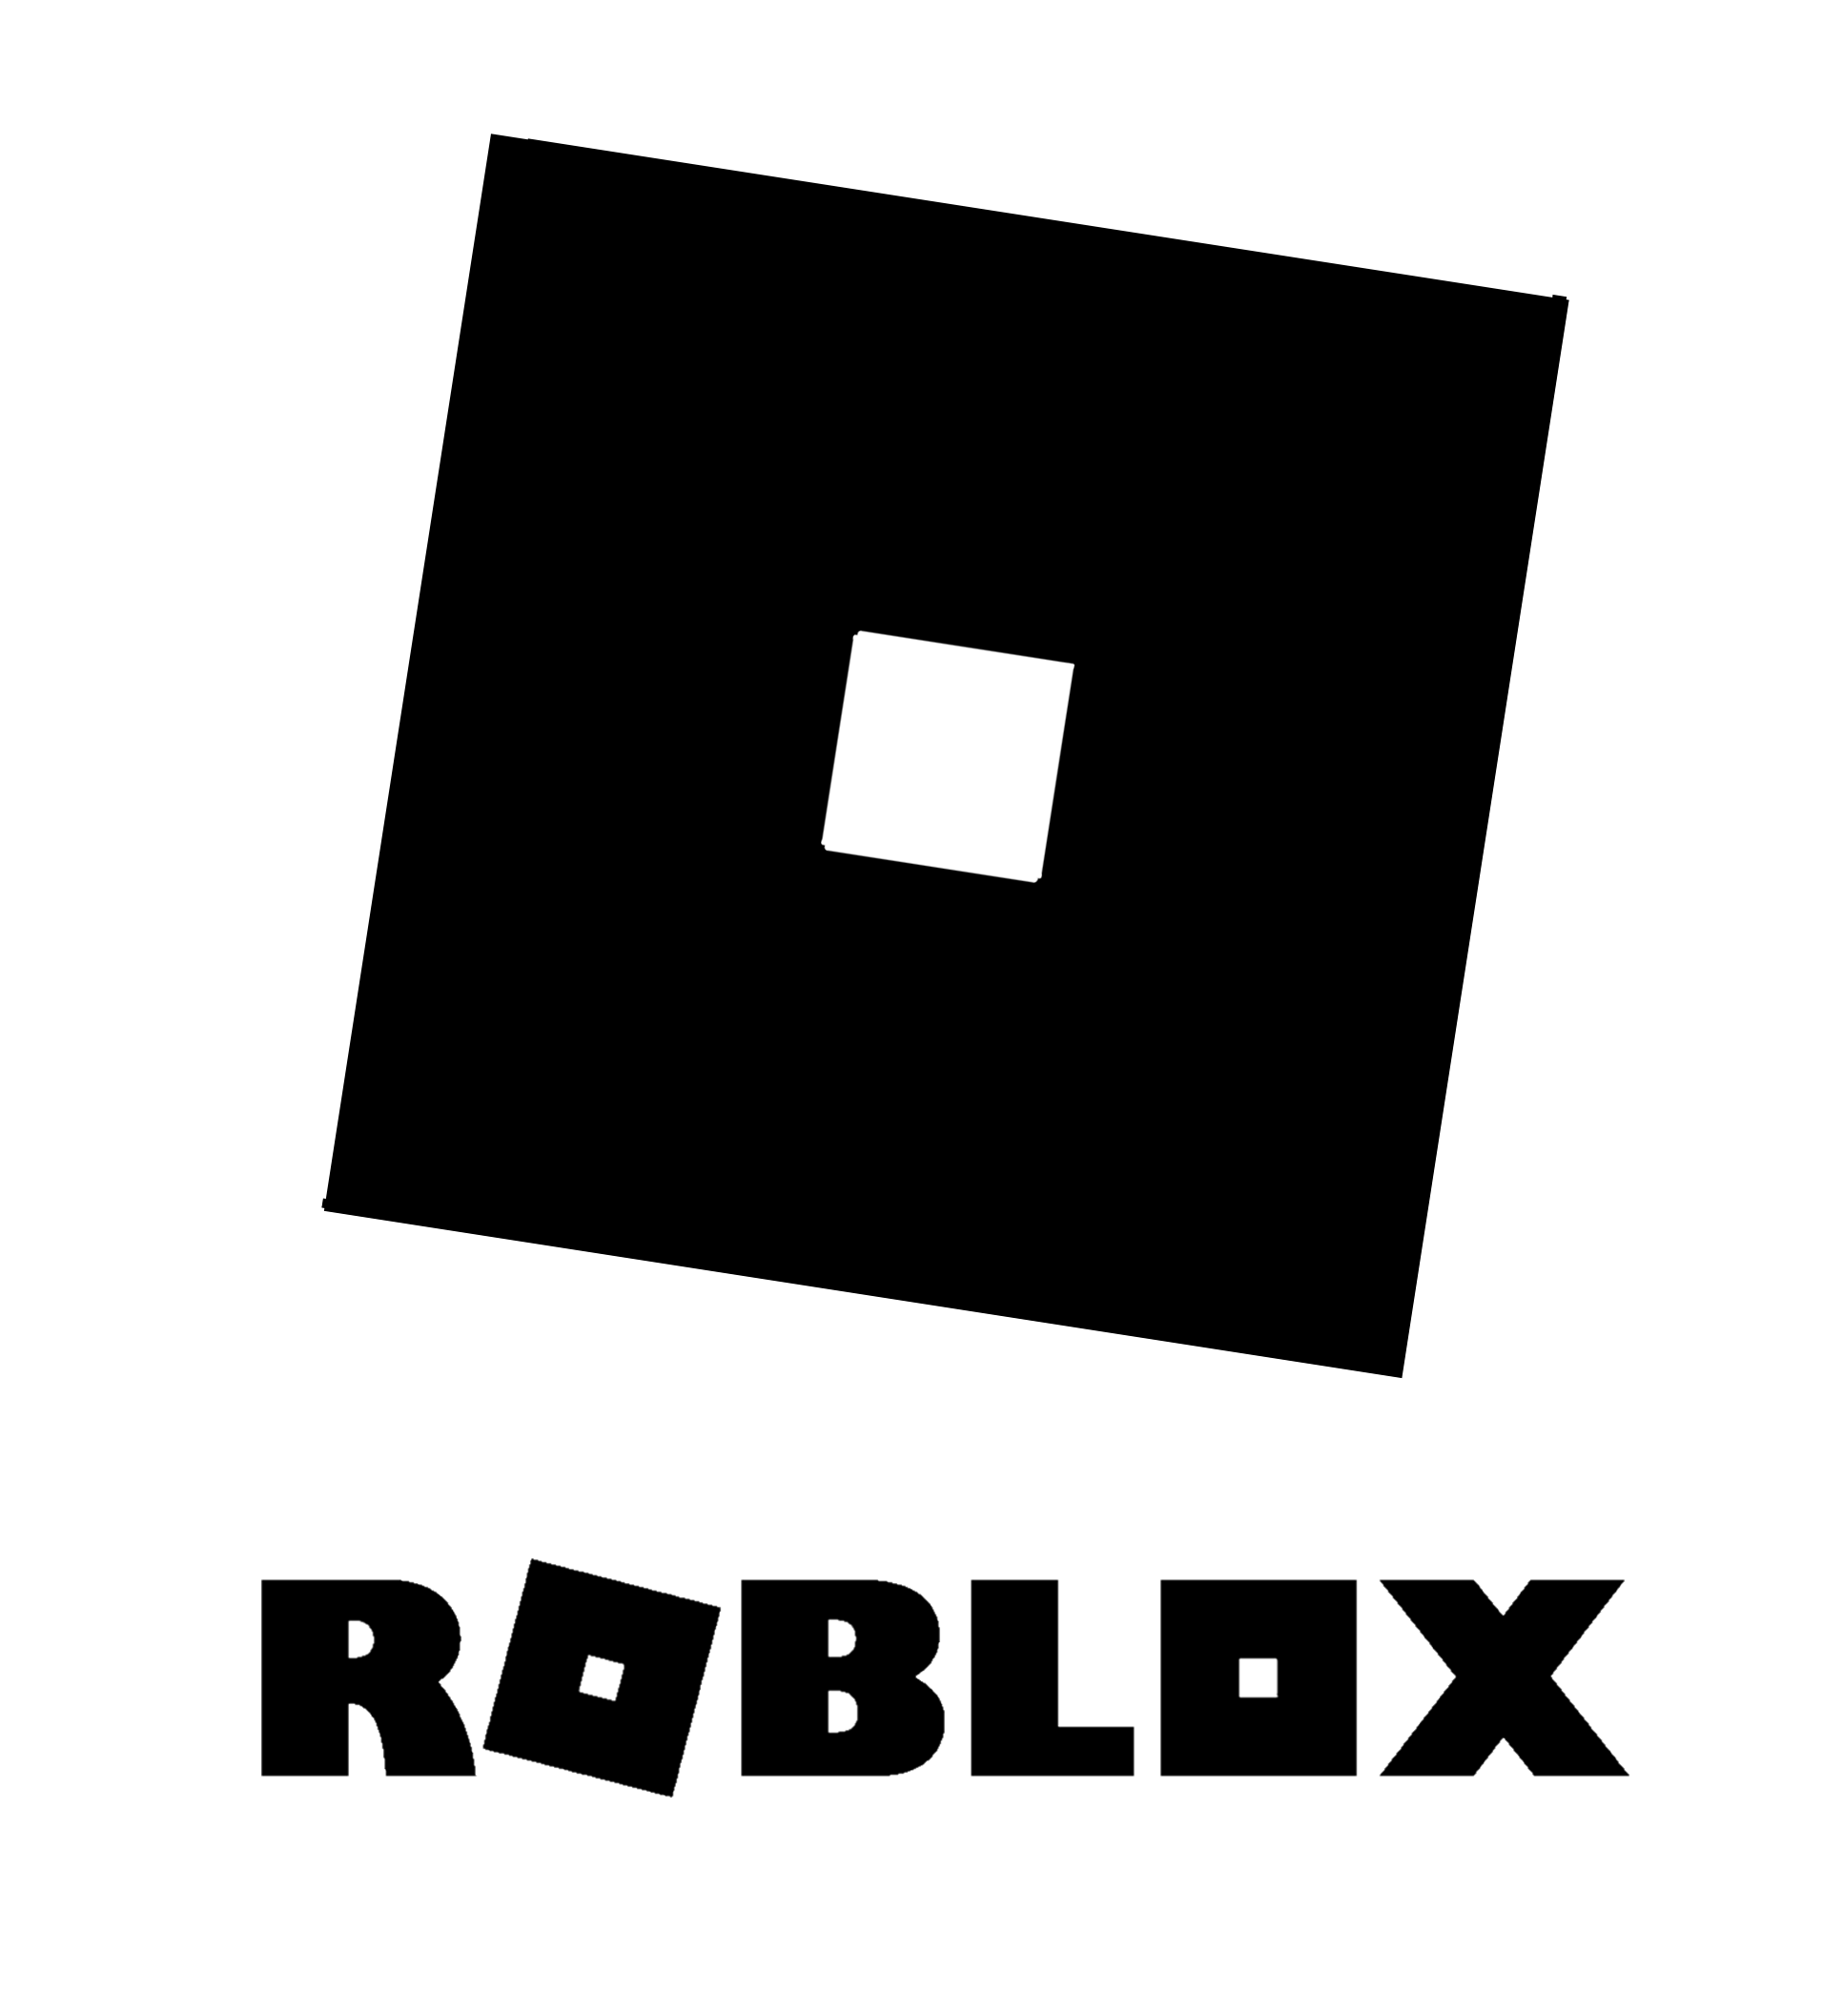 Roblox logo. РОБЛОКС символ. Roblox логотип чёрный. Иконка РОБЛОКС черная. Картинка РОБЛОКСА черный квадрат.